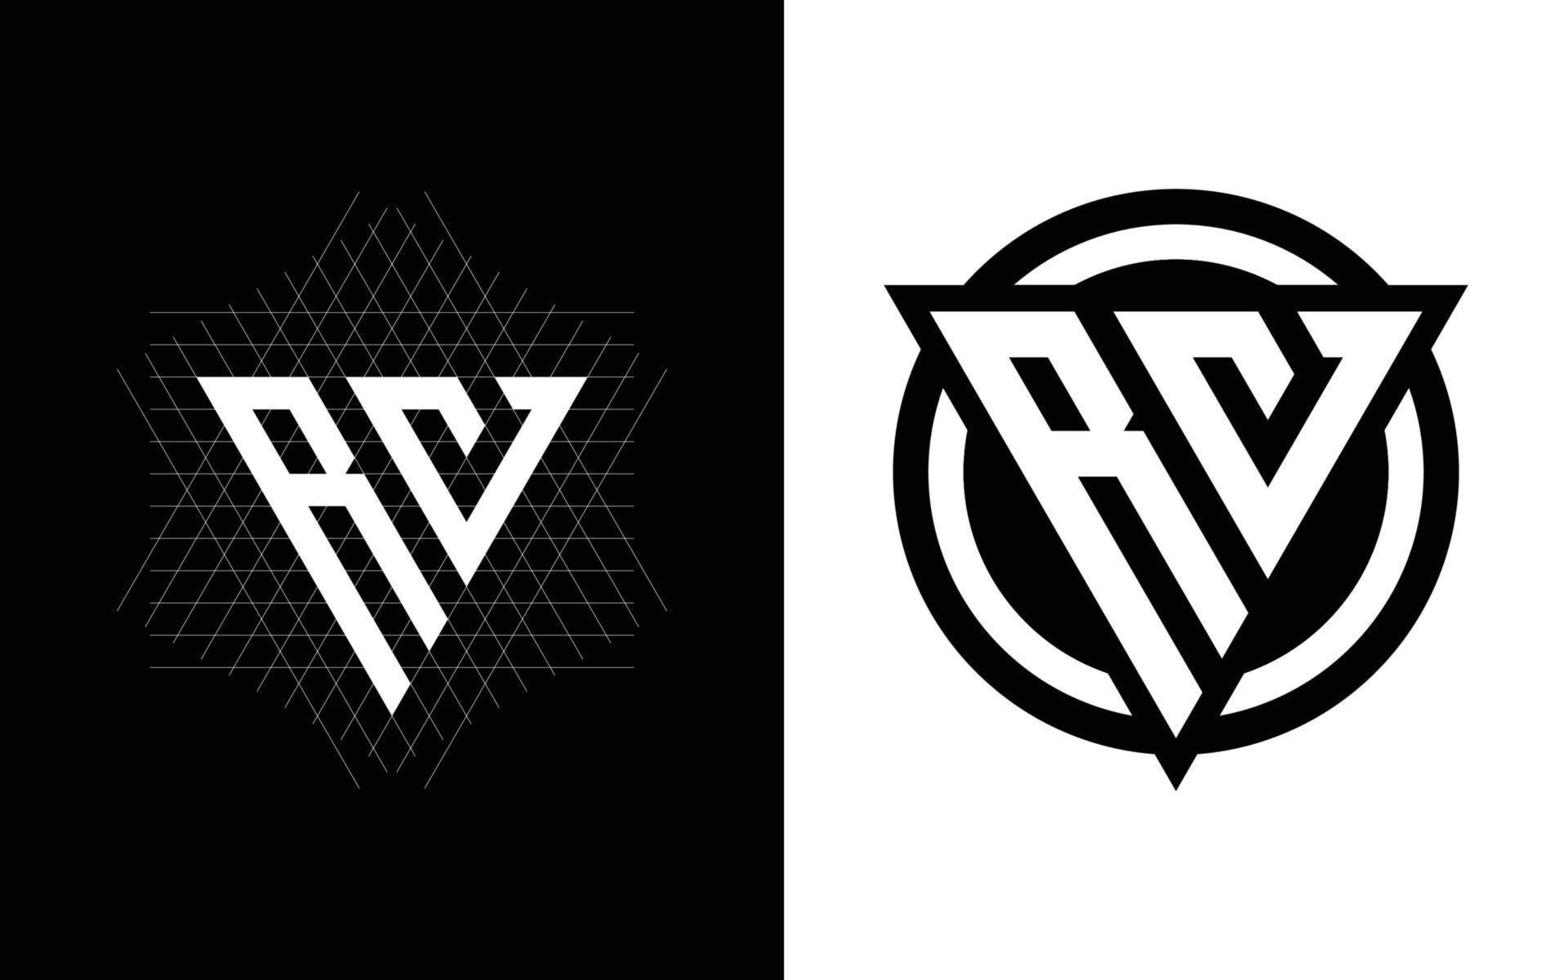 rv monogram logo met rooster methode ontwerp pro vector